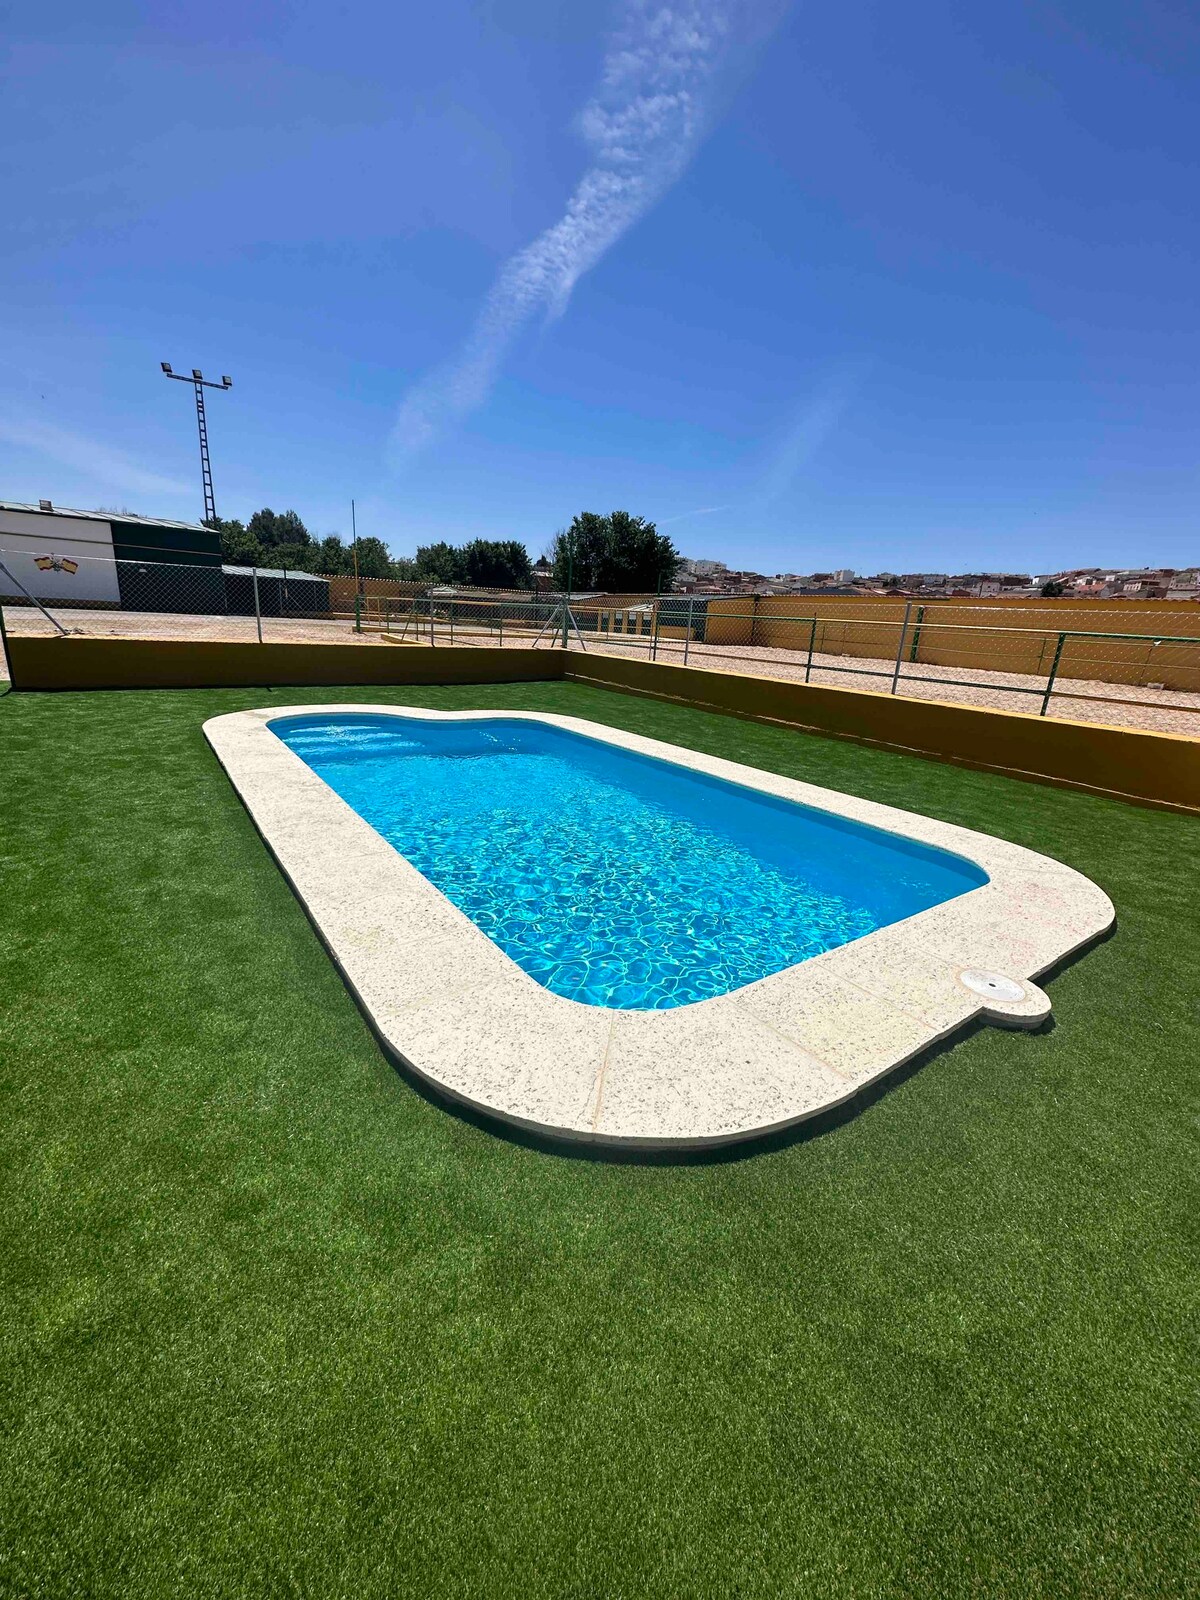 Casa Rural con piscina, Eventos Bodas cerca Madrid